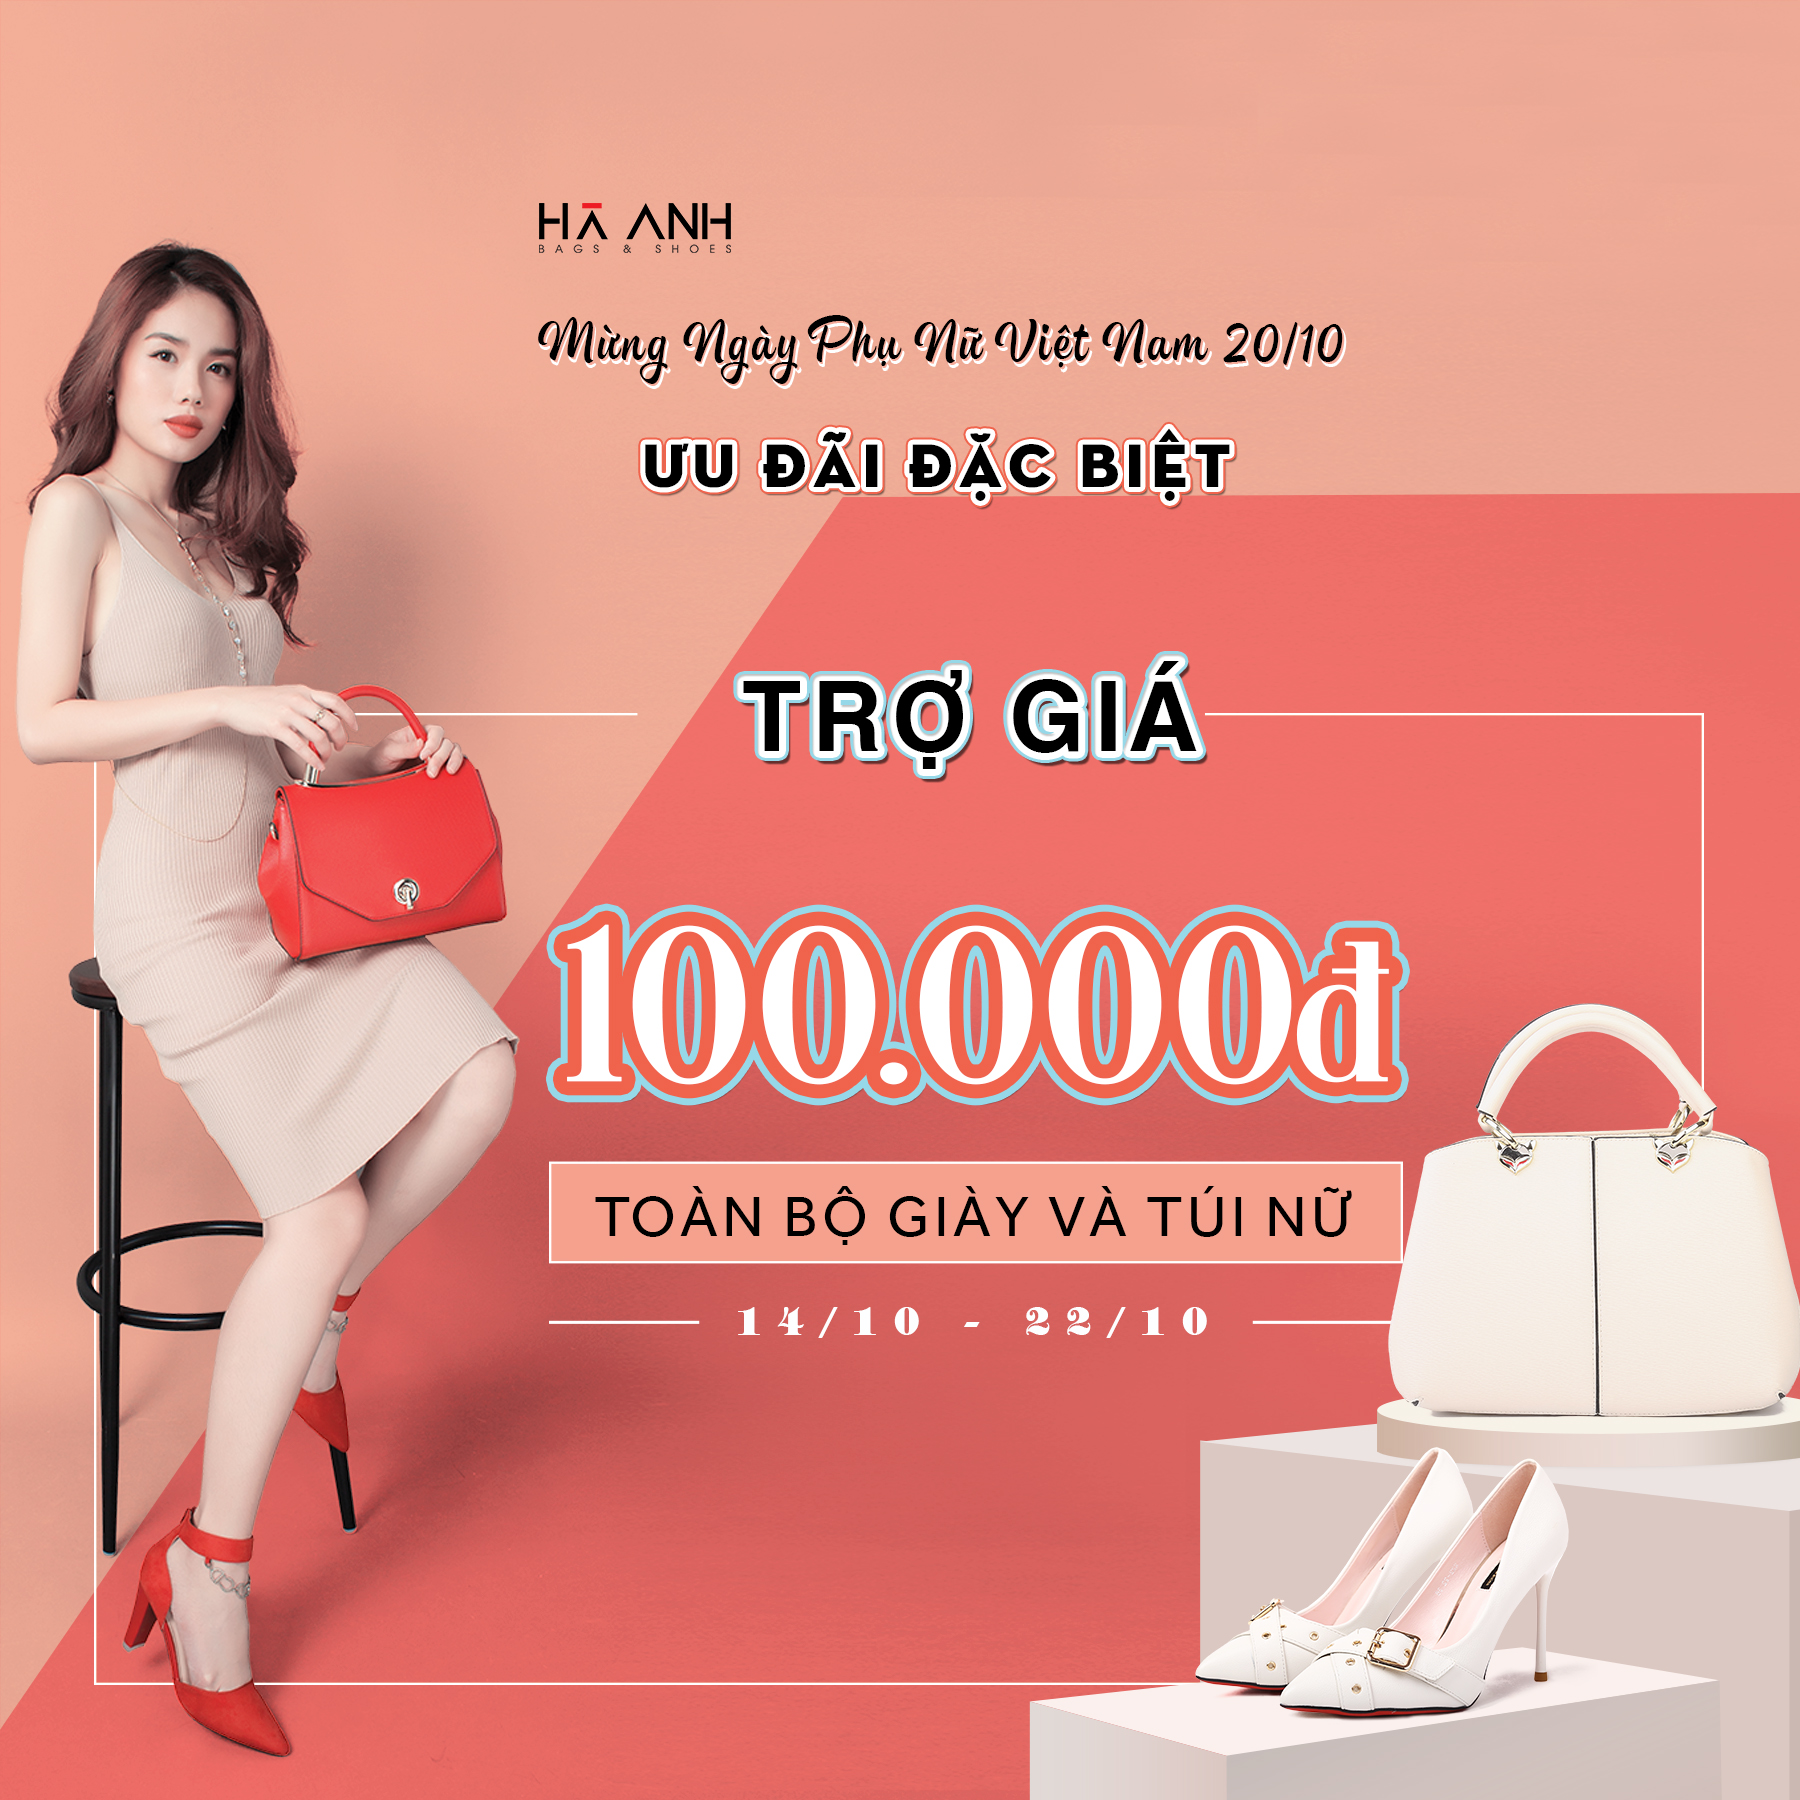 Trợ giá ngay 100.000VNĐ - Chúc Mừng Ngày Phụ Nữ Việt Nam